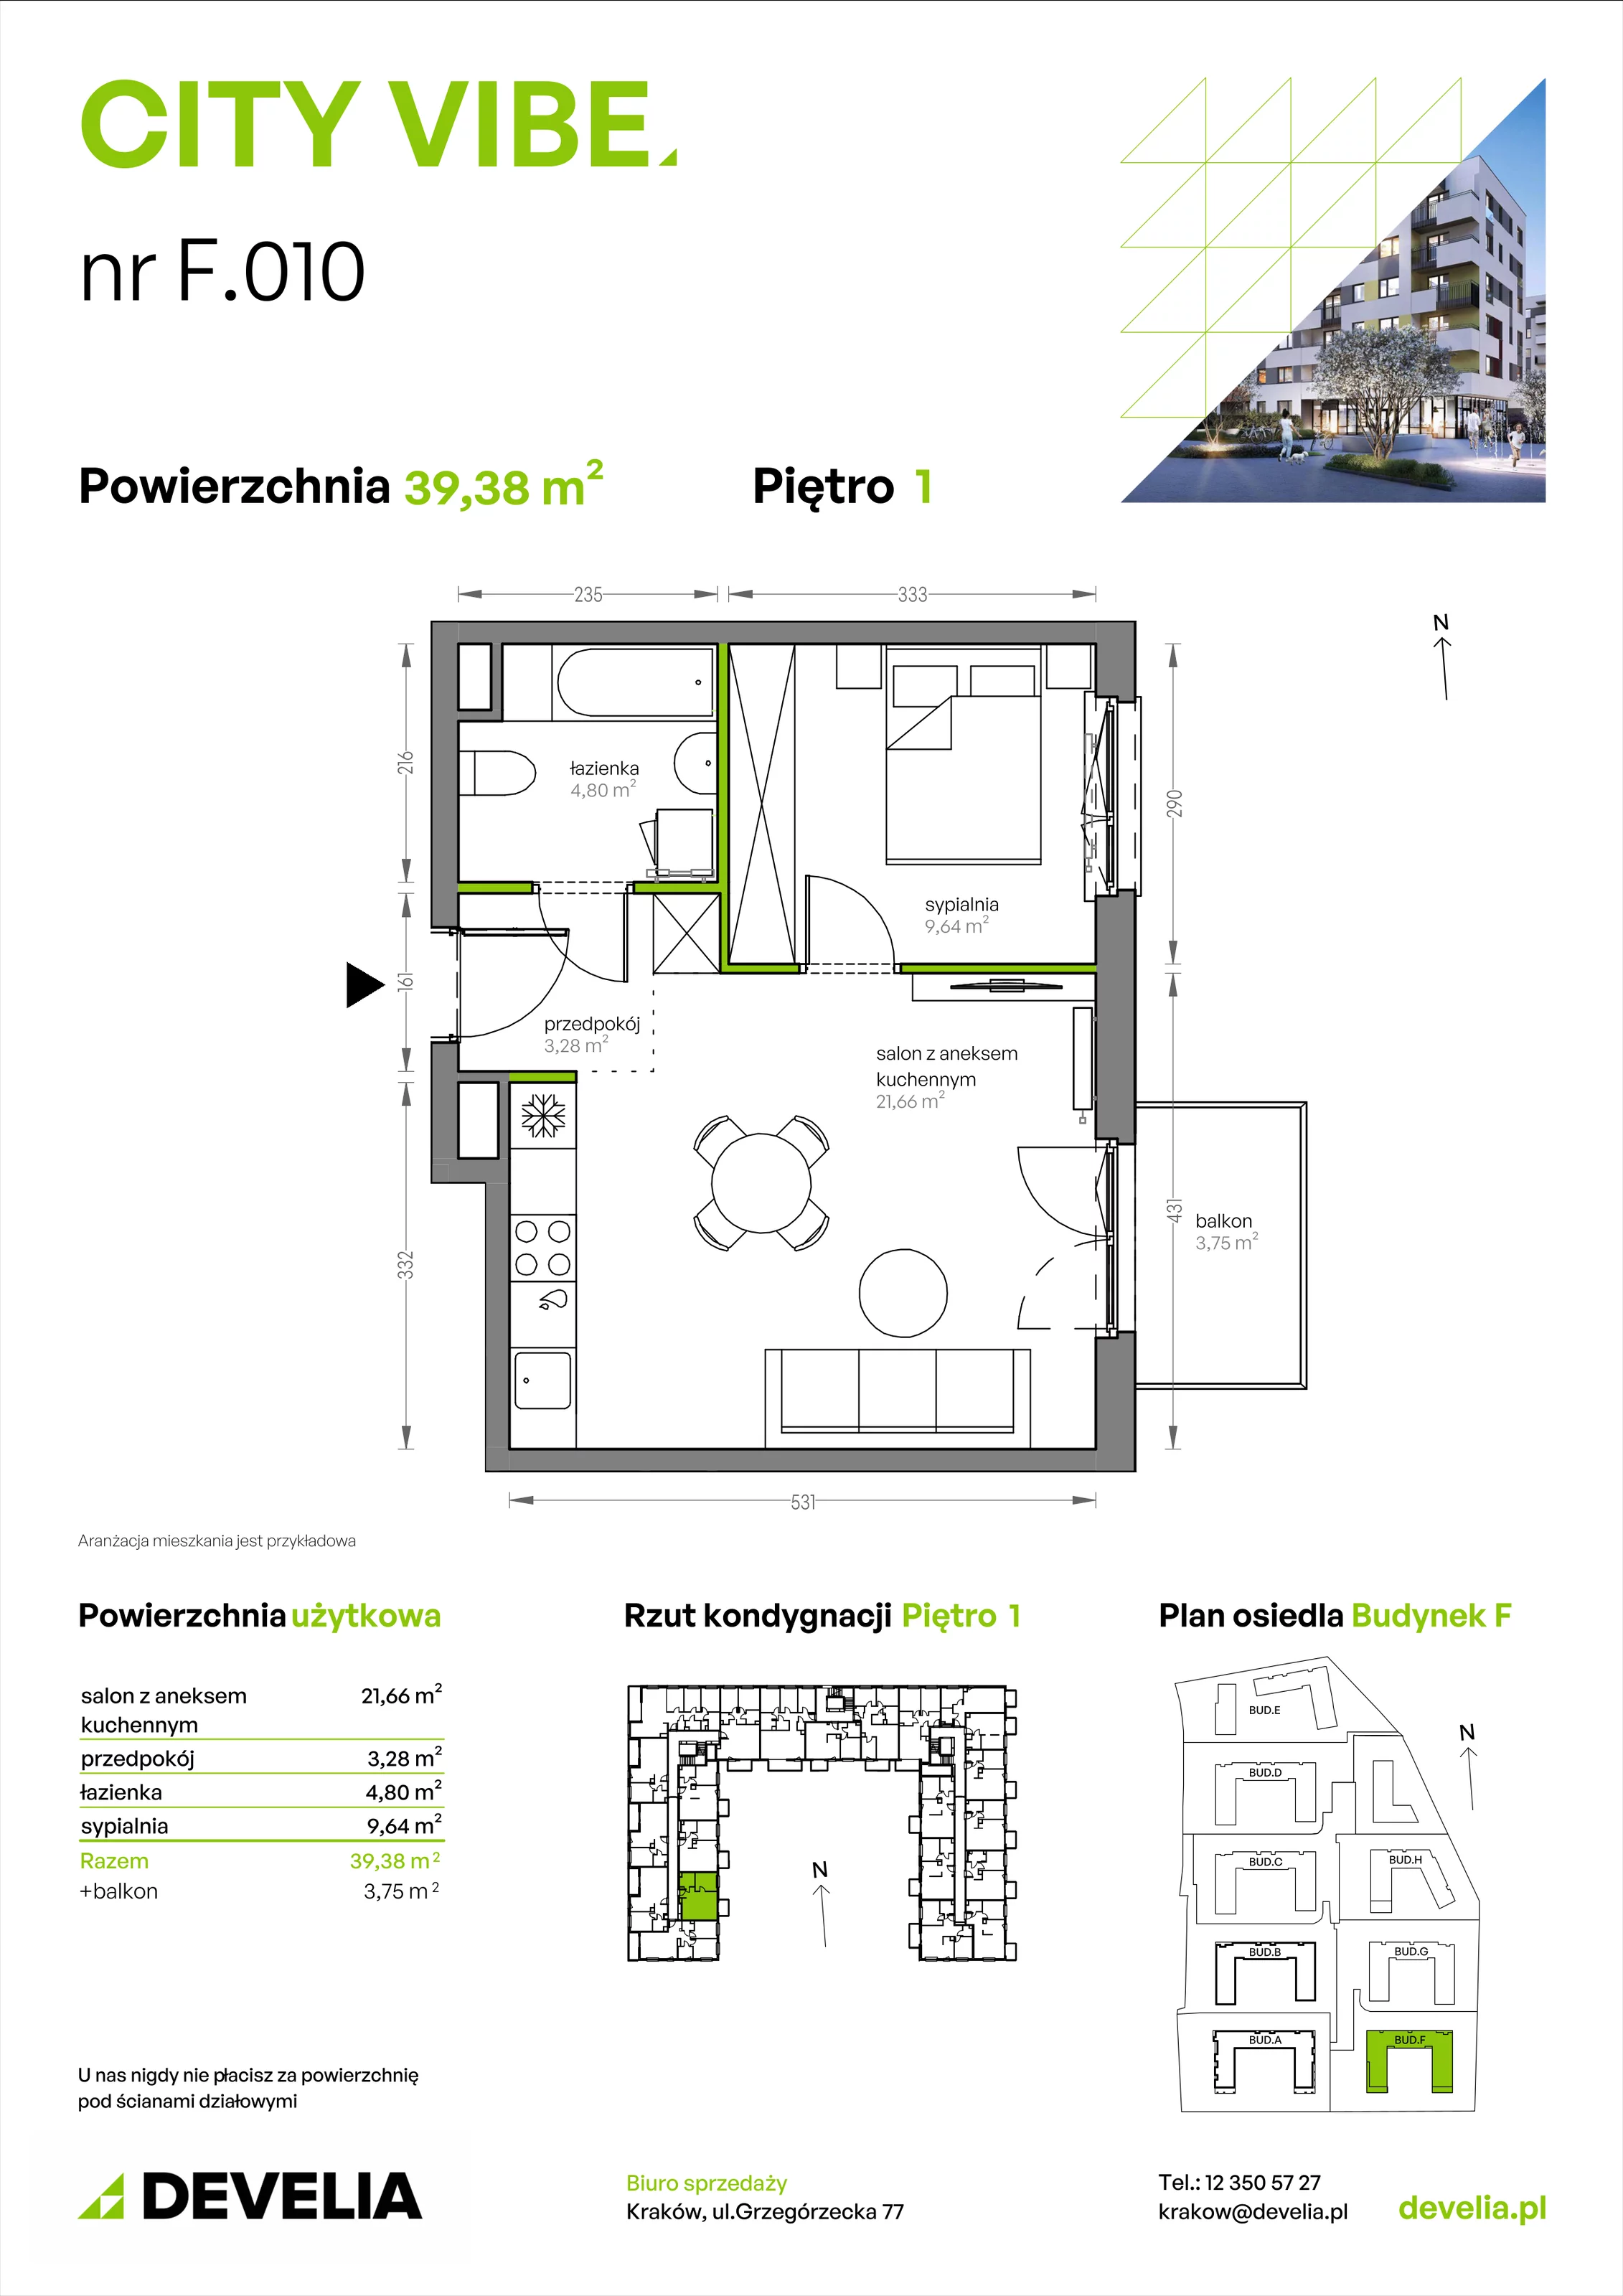 Mieszkanie 39,38 m², piętro 1, oferta nr F/010, City Vibe etap V, Kraków, Podgórze, Płaszów, ul. Myśliwska 68